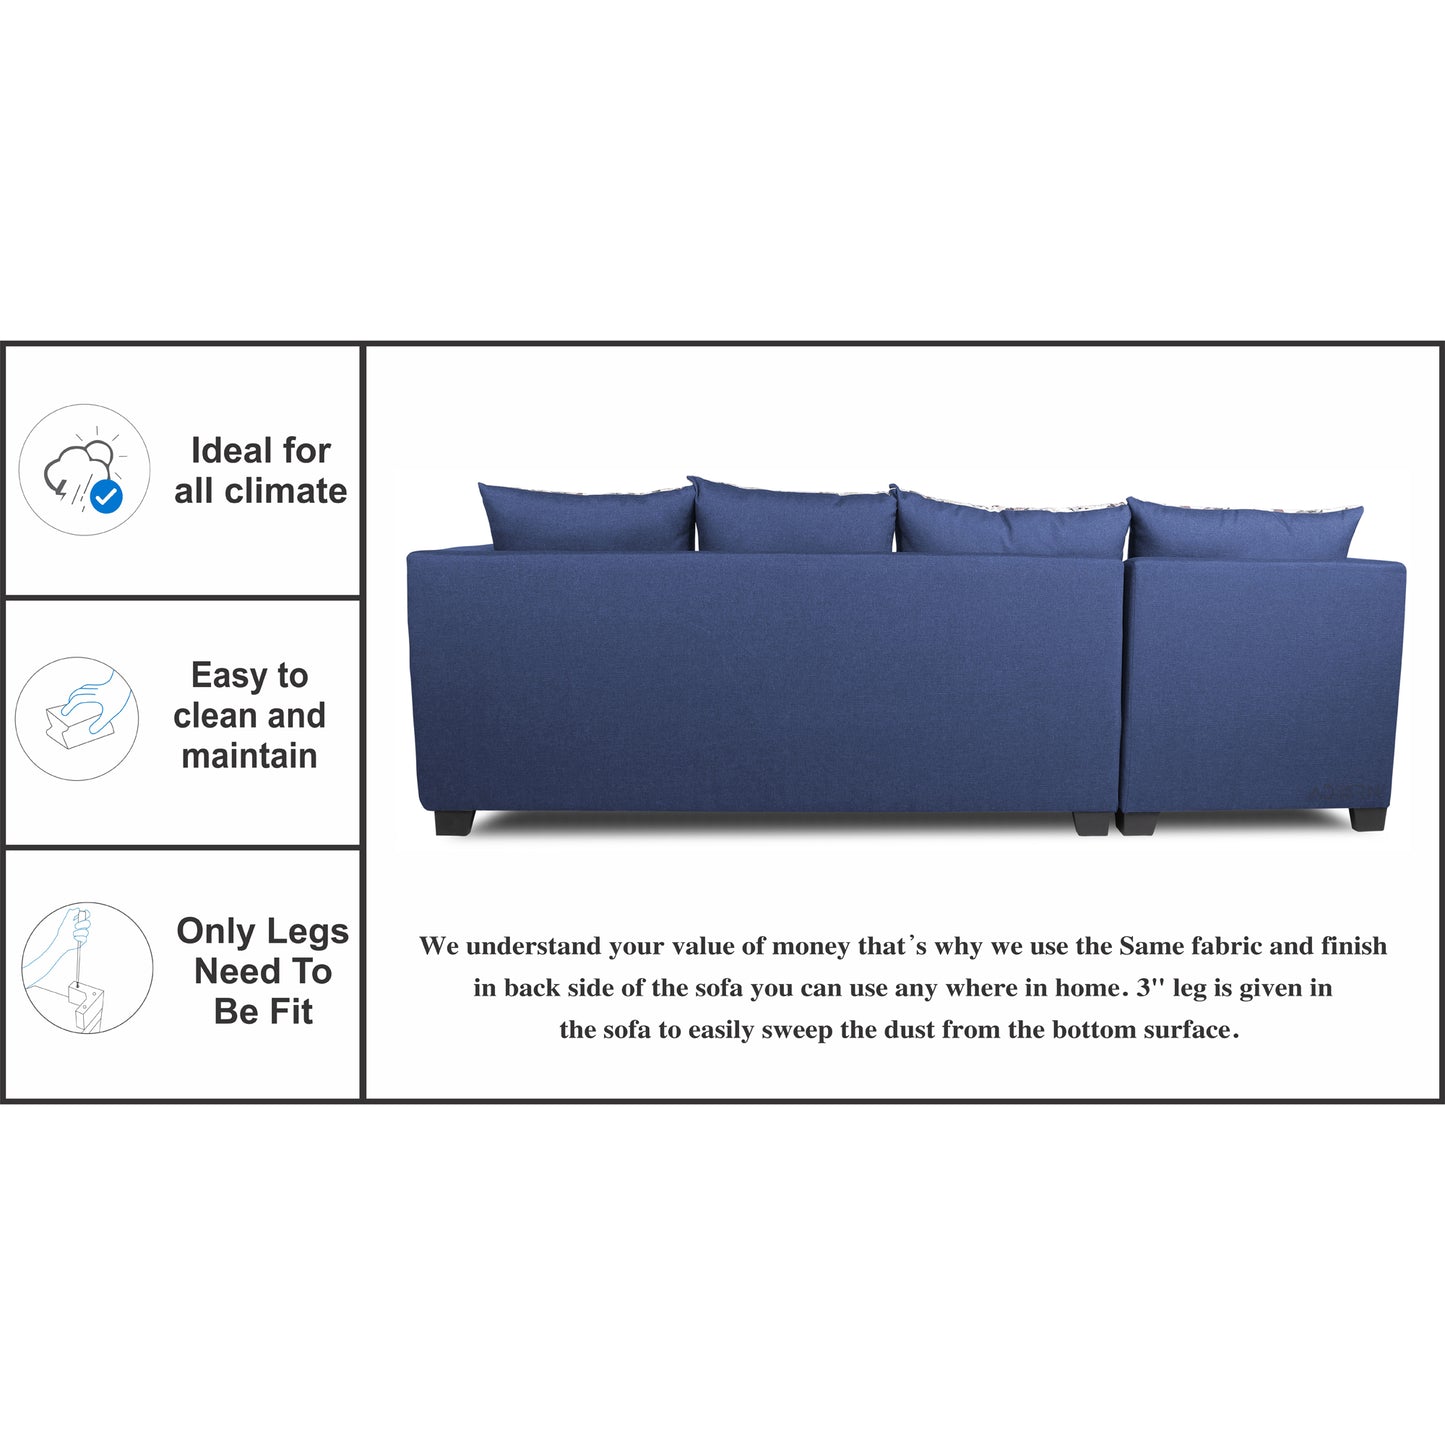 Adorn India Mclain L Shape 6 Seater Sofa (Left Side Handle)(Blue)